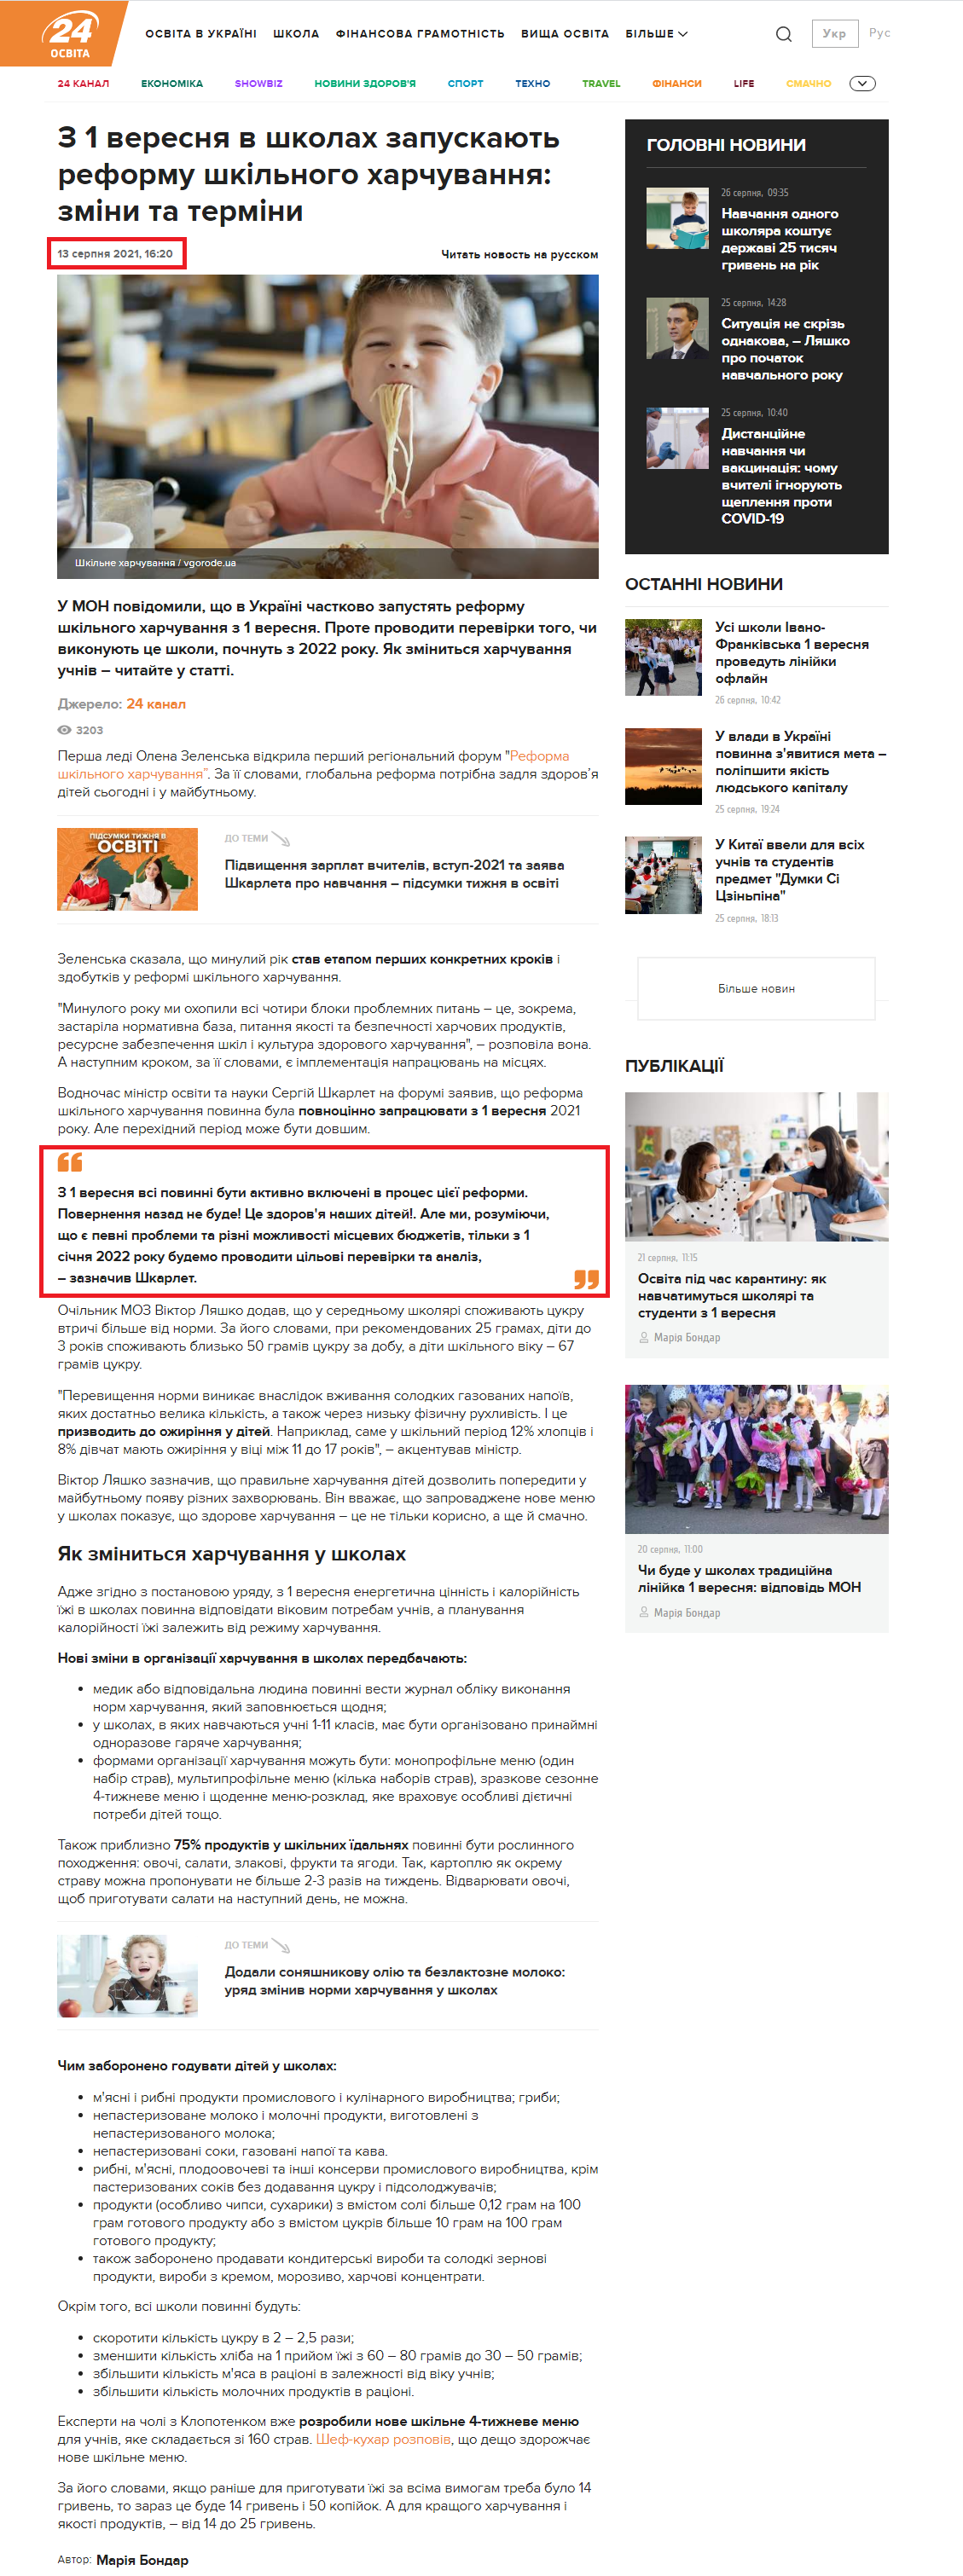 https://education.24tv.ua/1-veresnya-2021-shkolah-zapuskayut-nove-shkilne-ukrayina-novini_n1711947